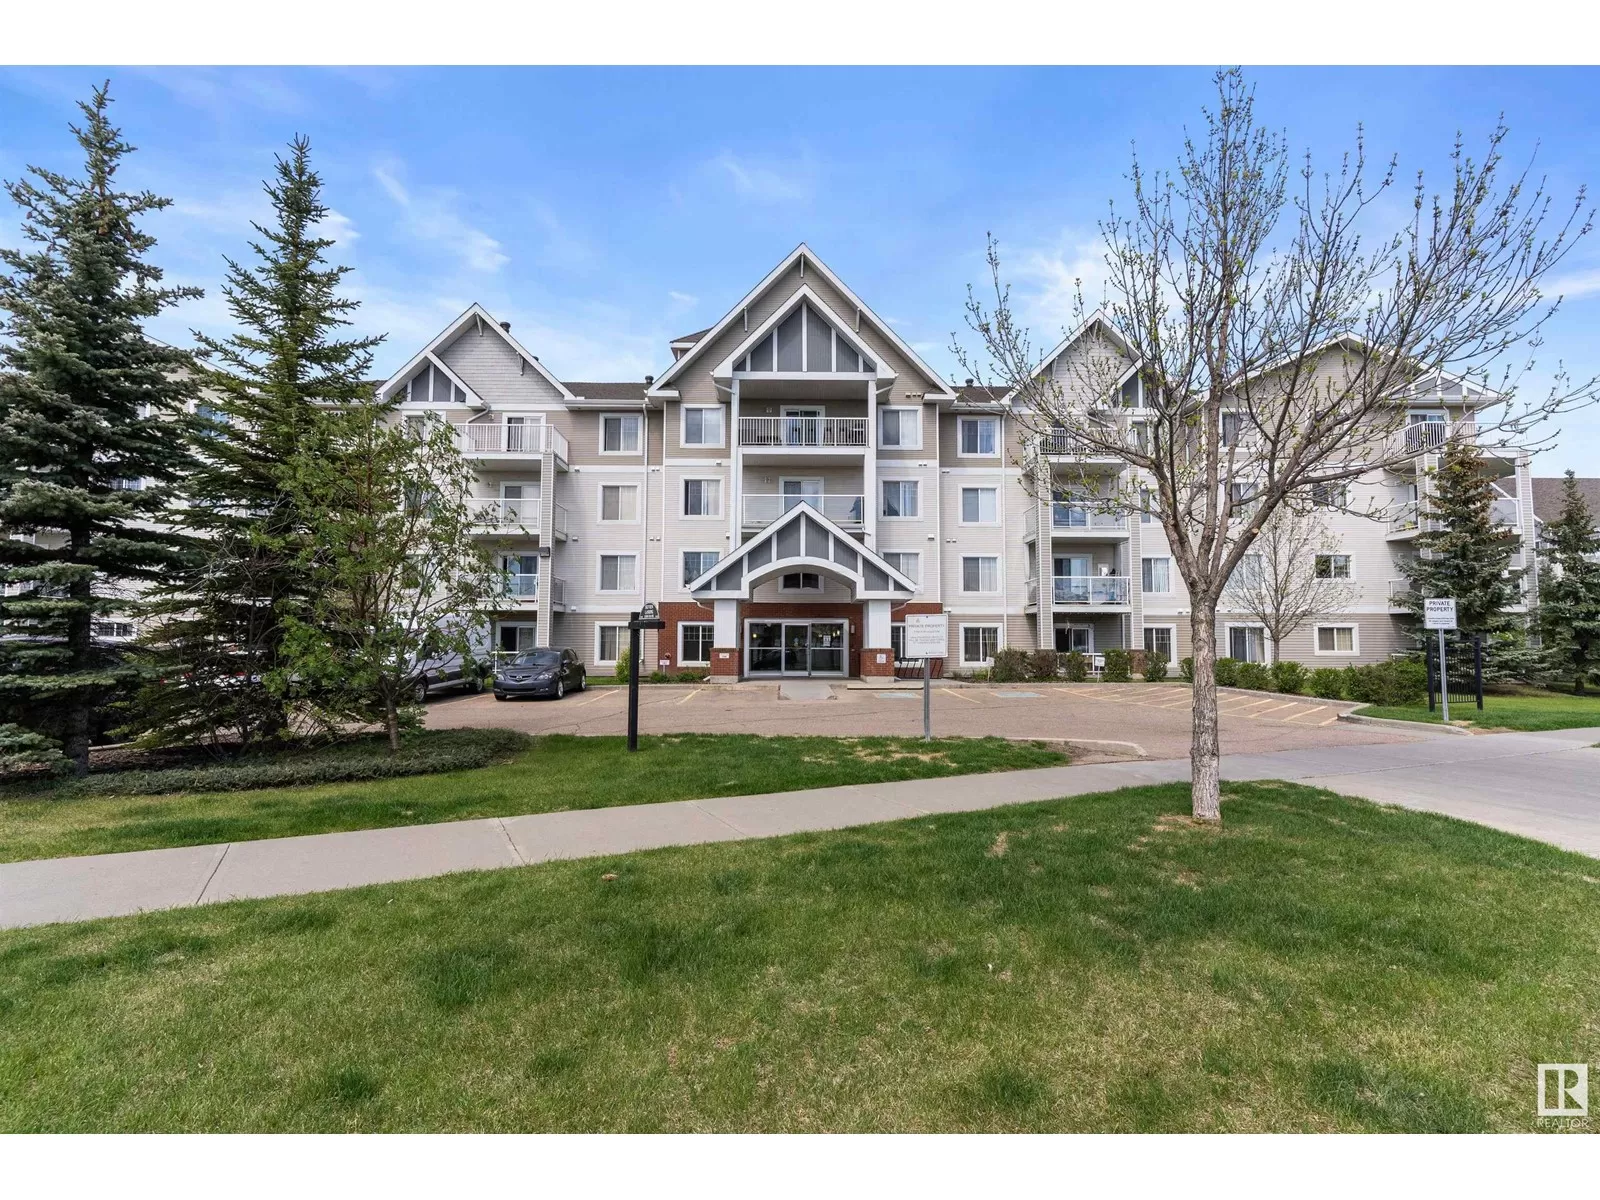 Apartment for rent: #206 13830 150 Av Nw Nw, Edmonton, Alberta T6V 1X2